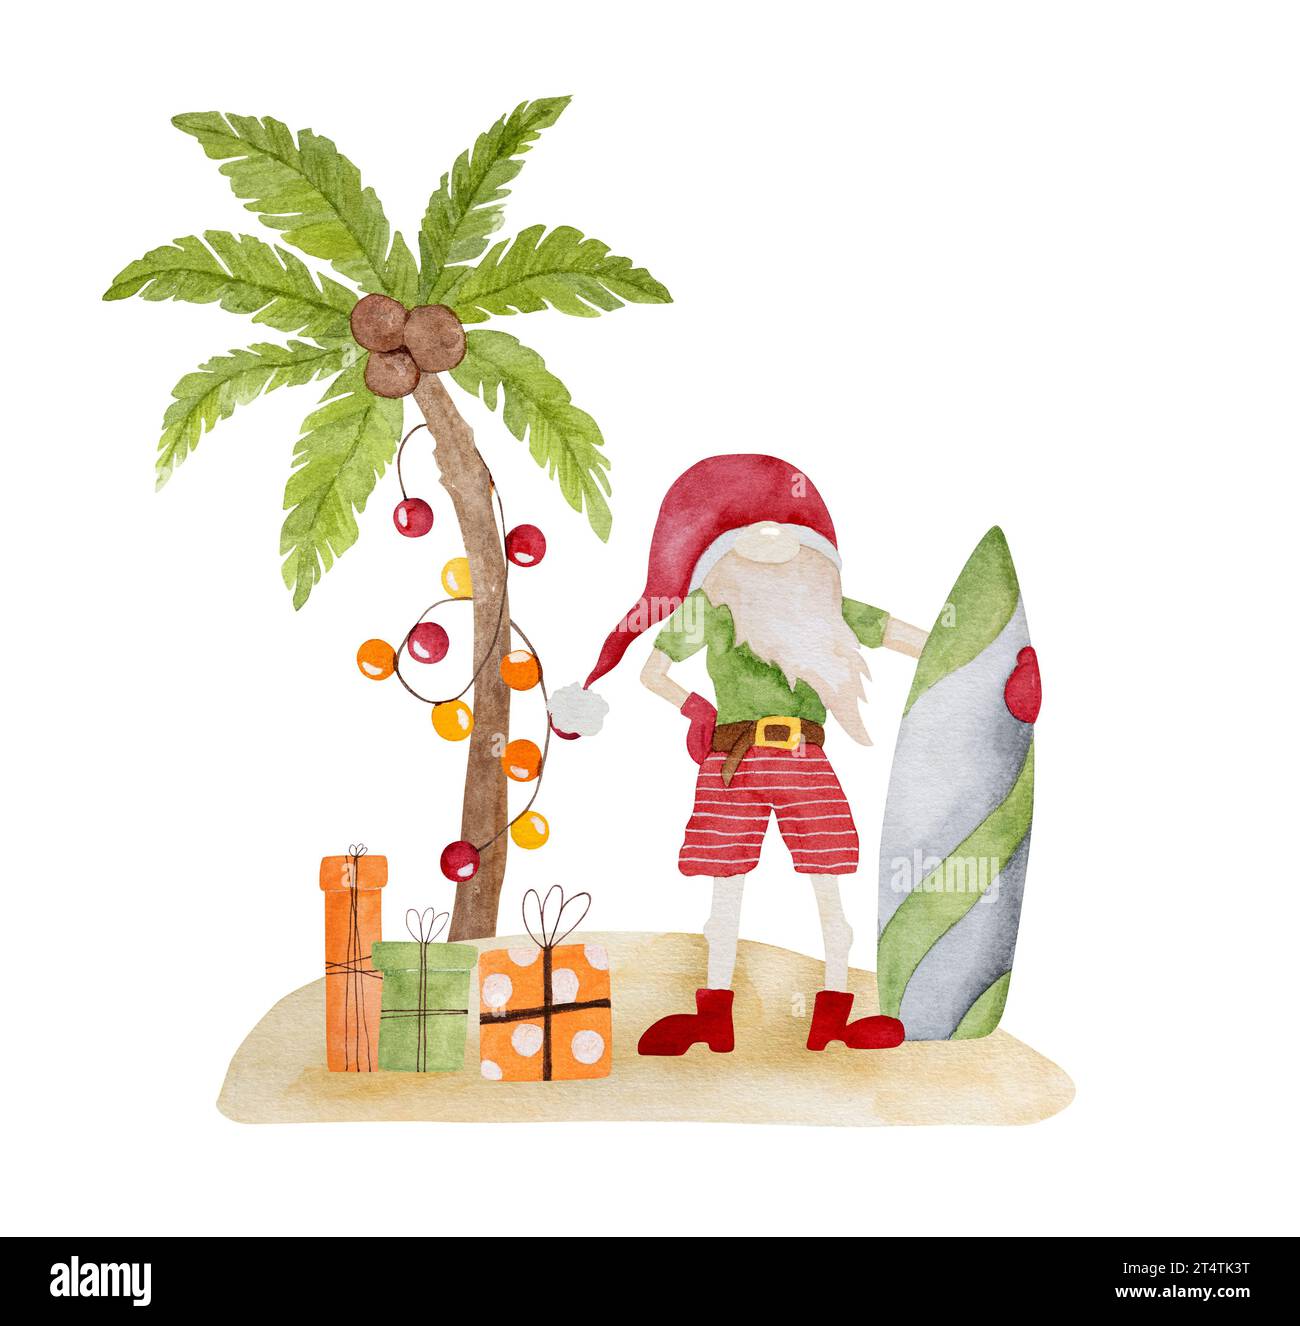 Peinture aquarelle joyeuse de noël des Caraïbes avec palmiers arbre de Noël, Père Noël avec planche de surf et cadeaux. Carte postale du nouvel an sur la plage tropicale Banque D'Images